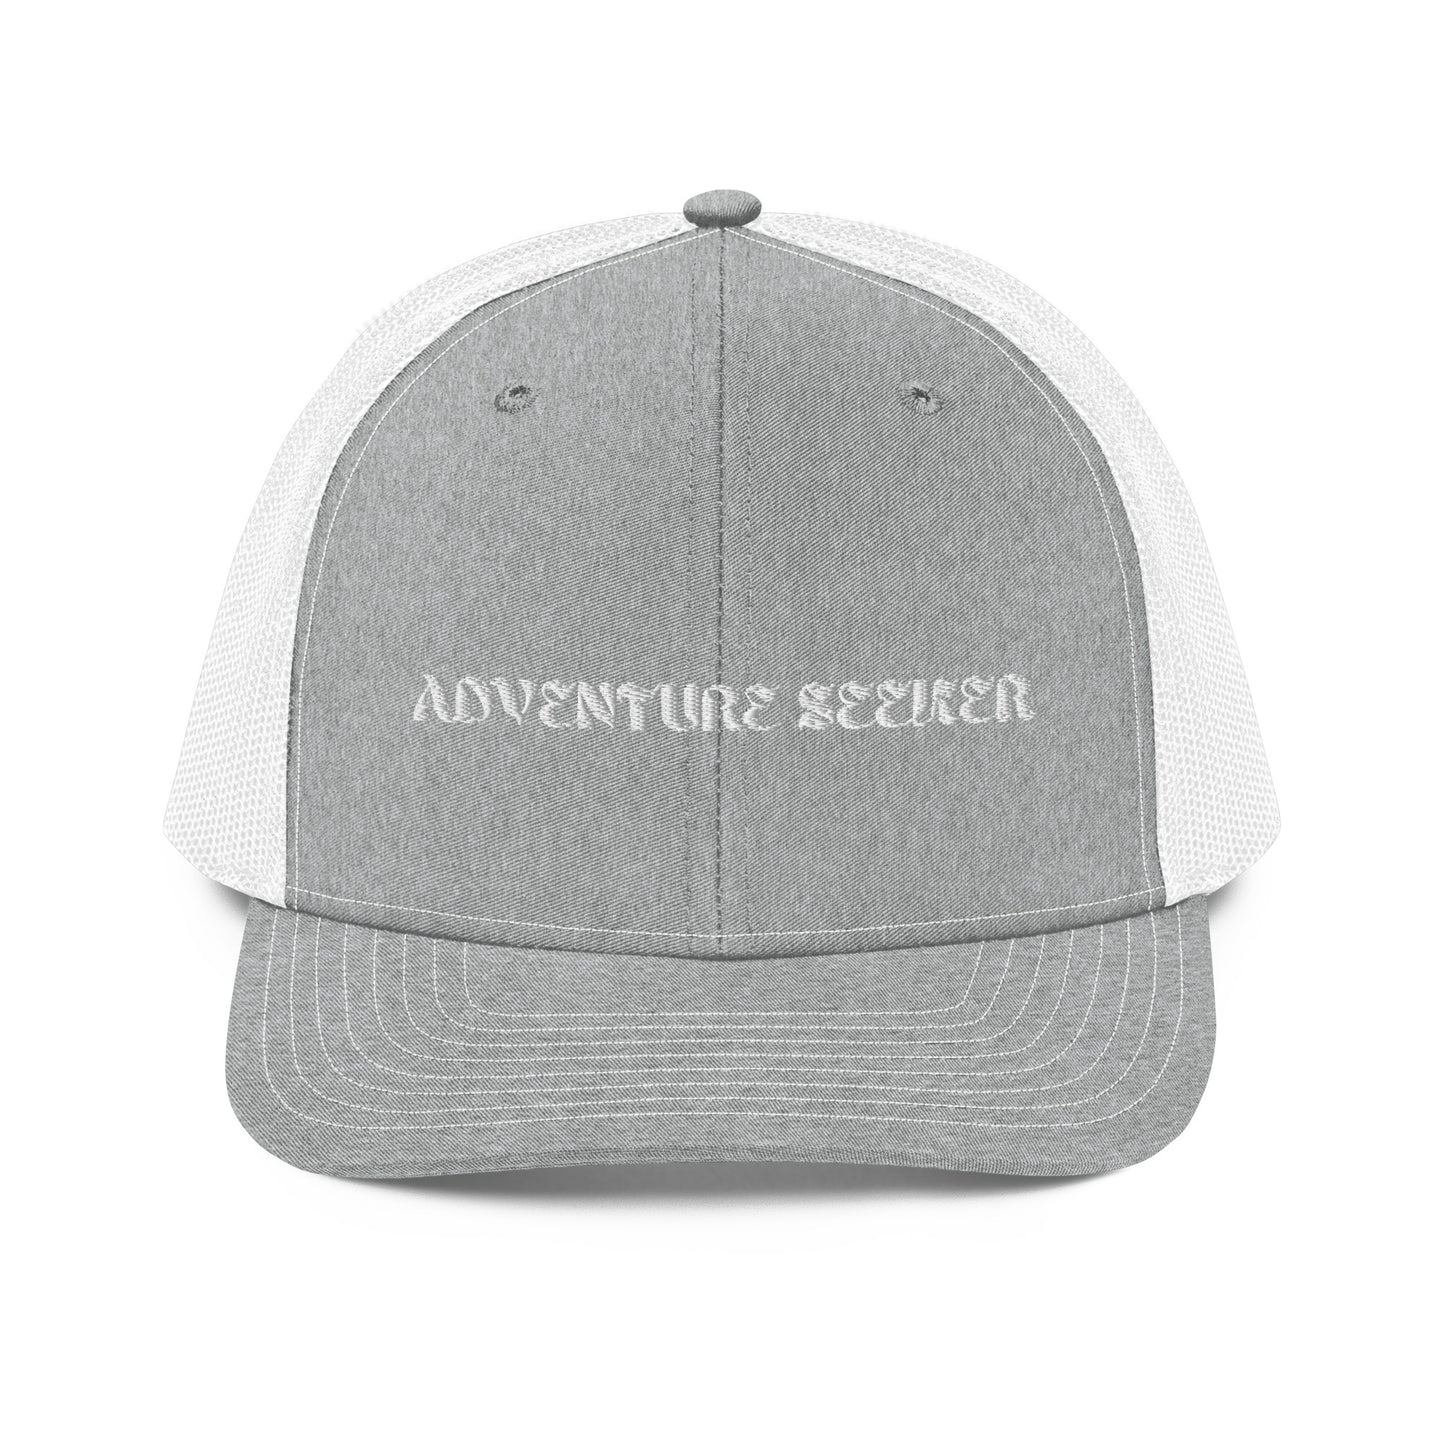 Adventure Seeker Trucker Hat - Grey Front